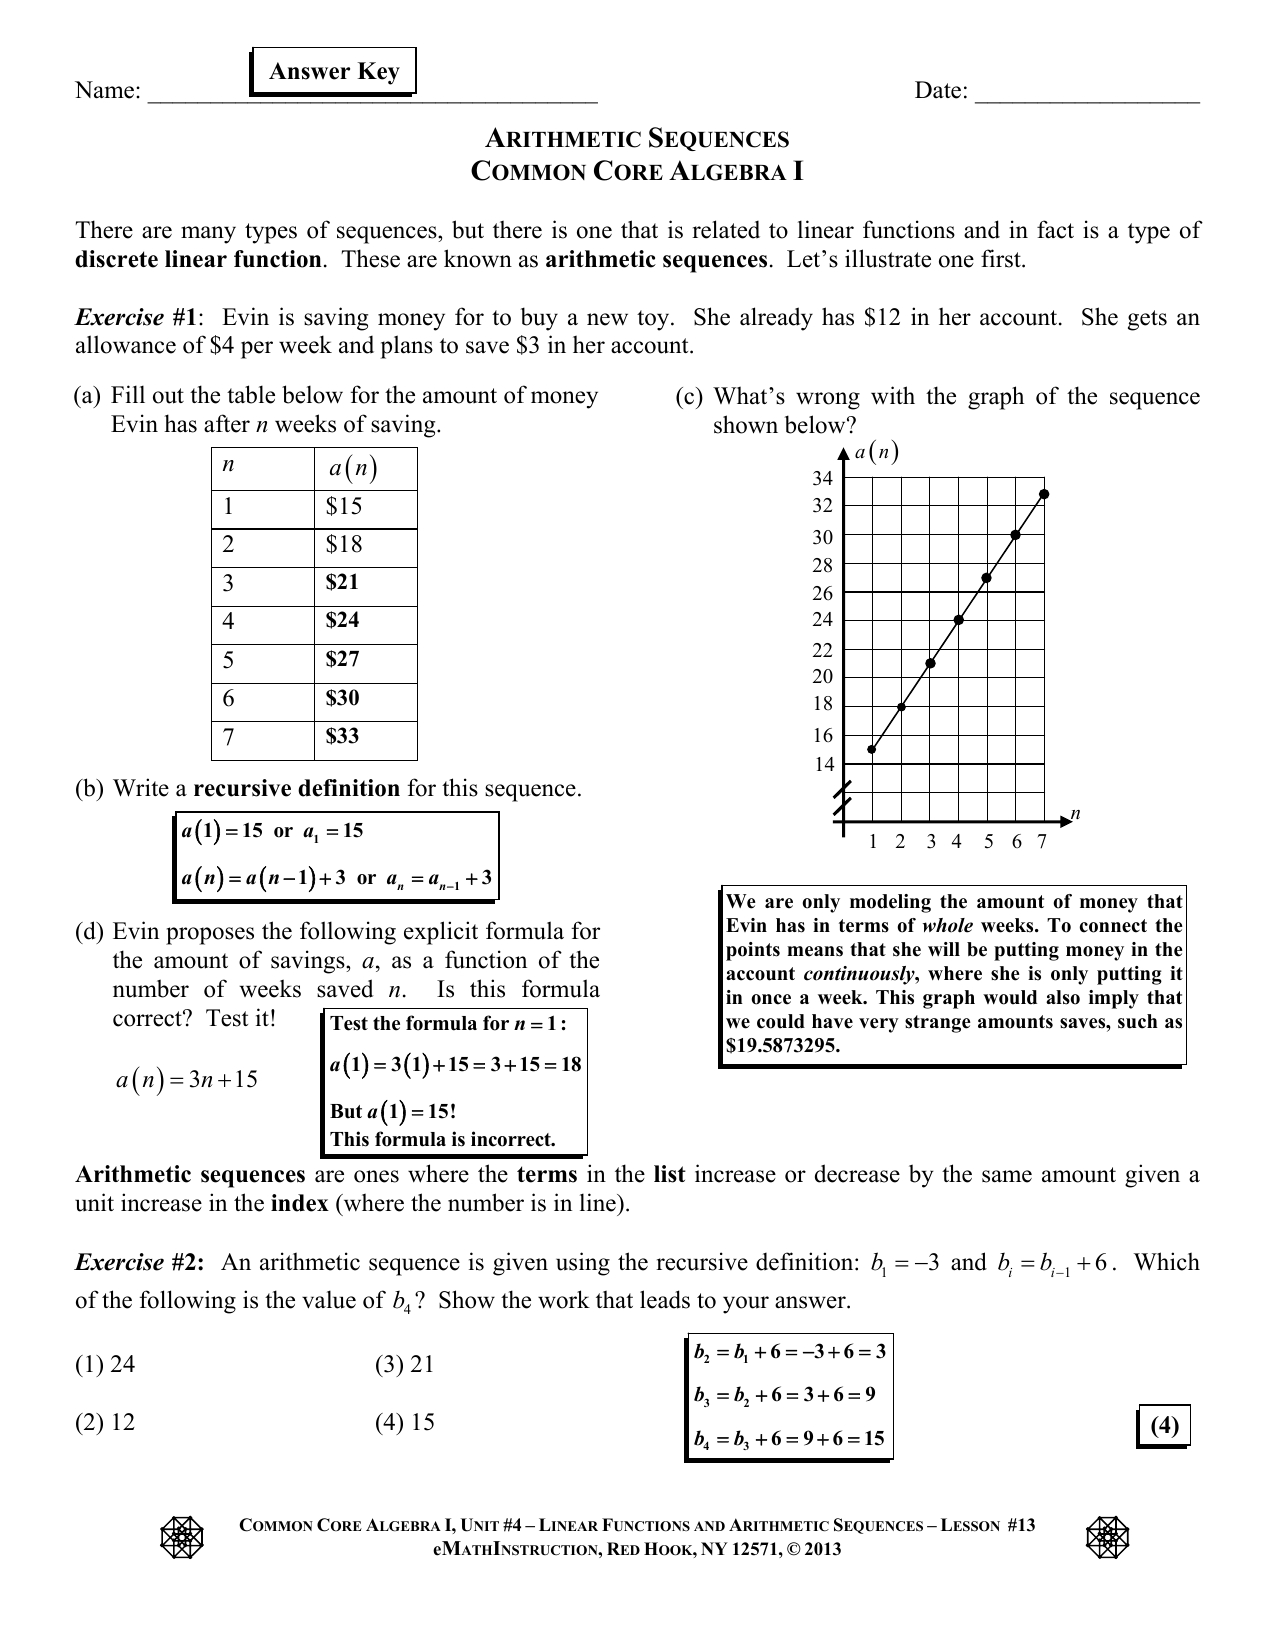 Arithmetic Sequences Lesson 13 Ak